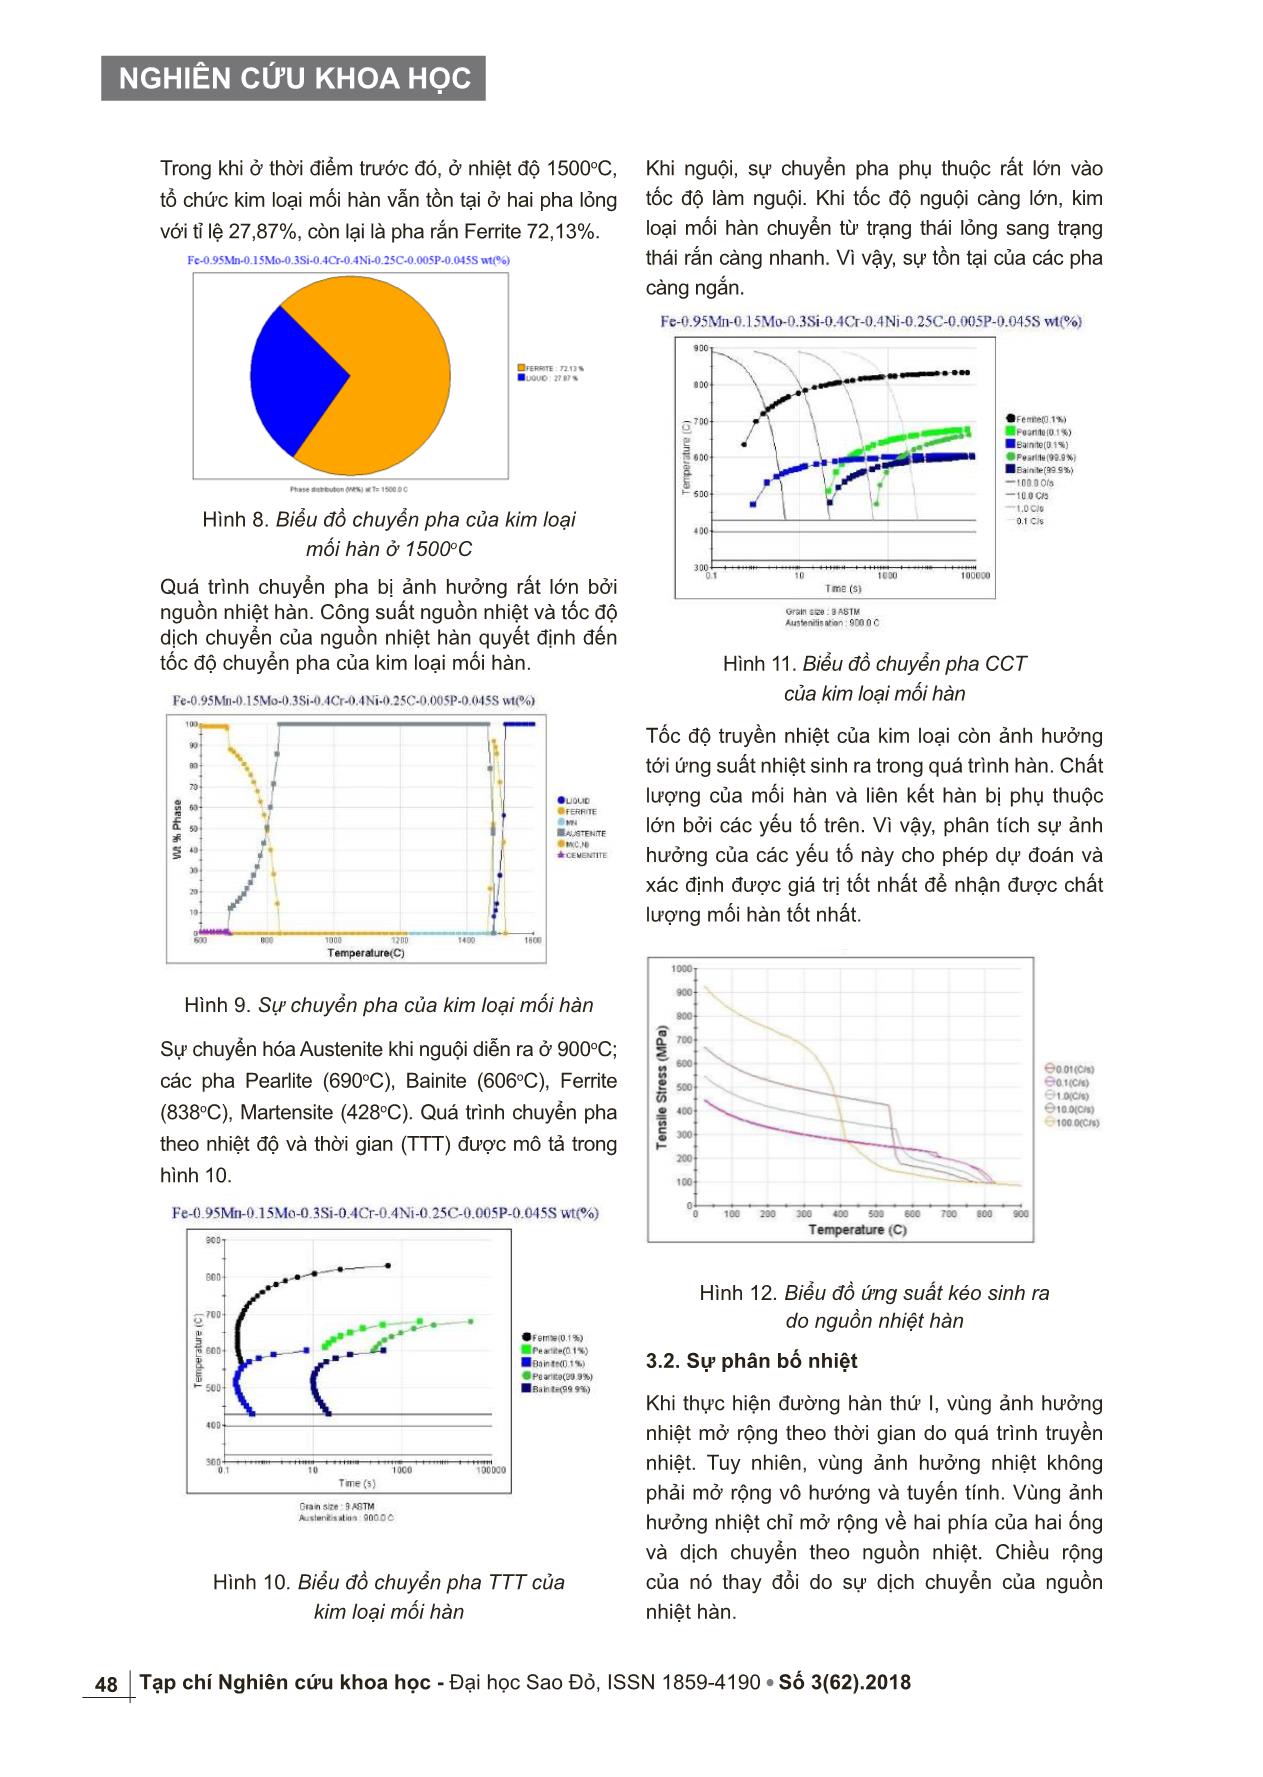 Nghiên cứu mô phỏng sự chuyển pha và trường nhiệt khi hàn ống thép A53 bằng quá trình Orbital – TIG trang 4